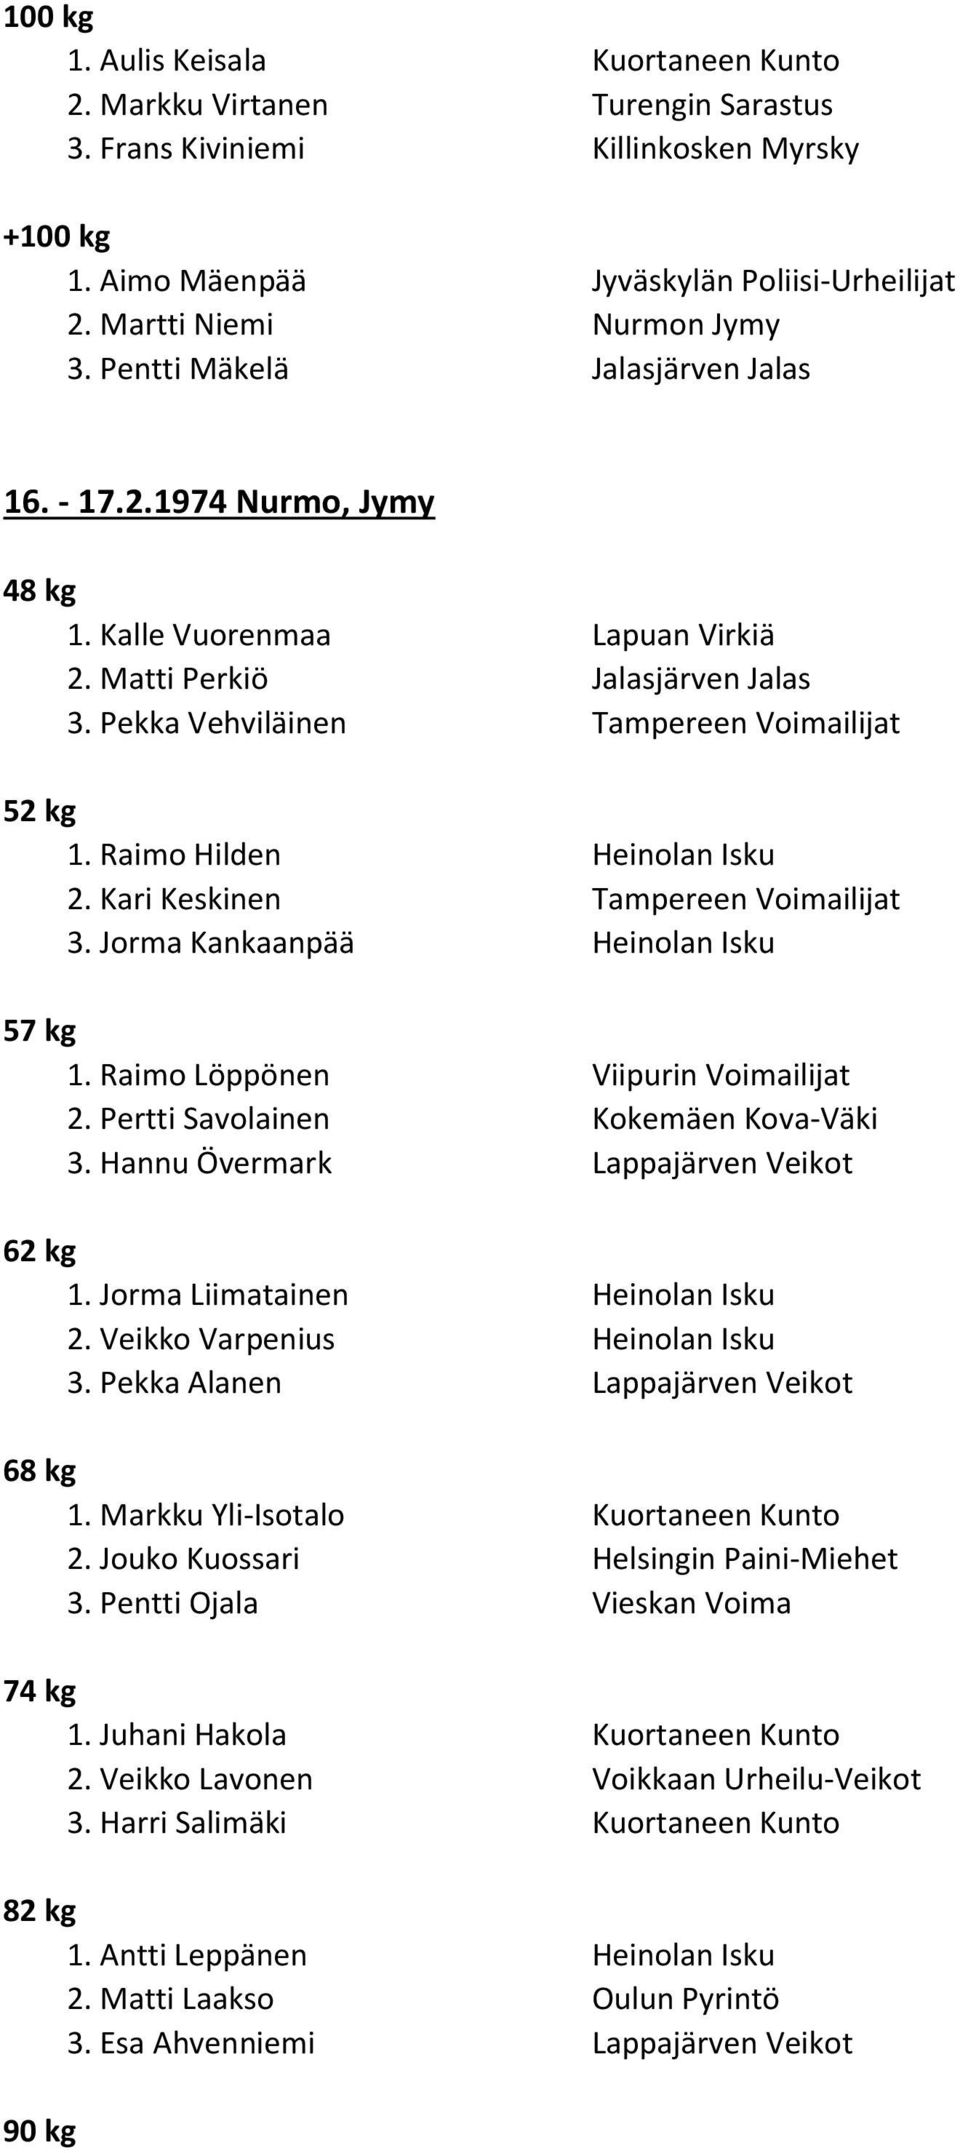 Raimo Hilden Heinolan Isku 2. Kari Keskinen Tampereen Voimailijat 3. Jorma Kankaanpää Heinolan Isku 1. Raimo Löppönen Viipurin Voimailijat 2. Pertti Savolainen Kokemäen Kova-Väki 3.